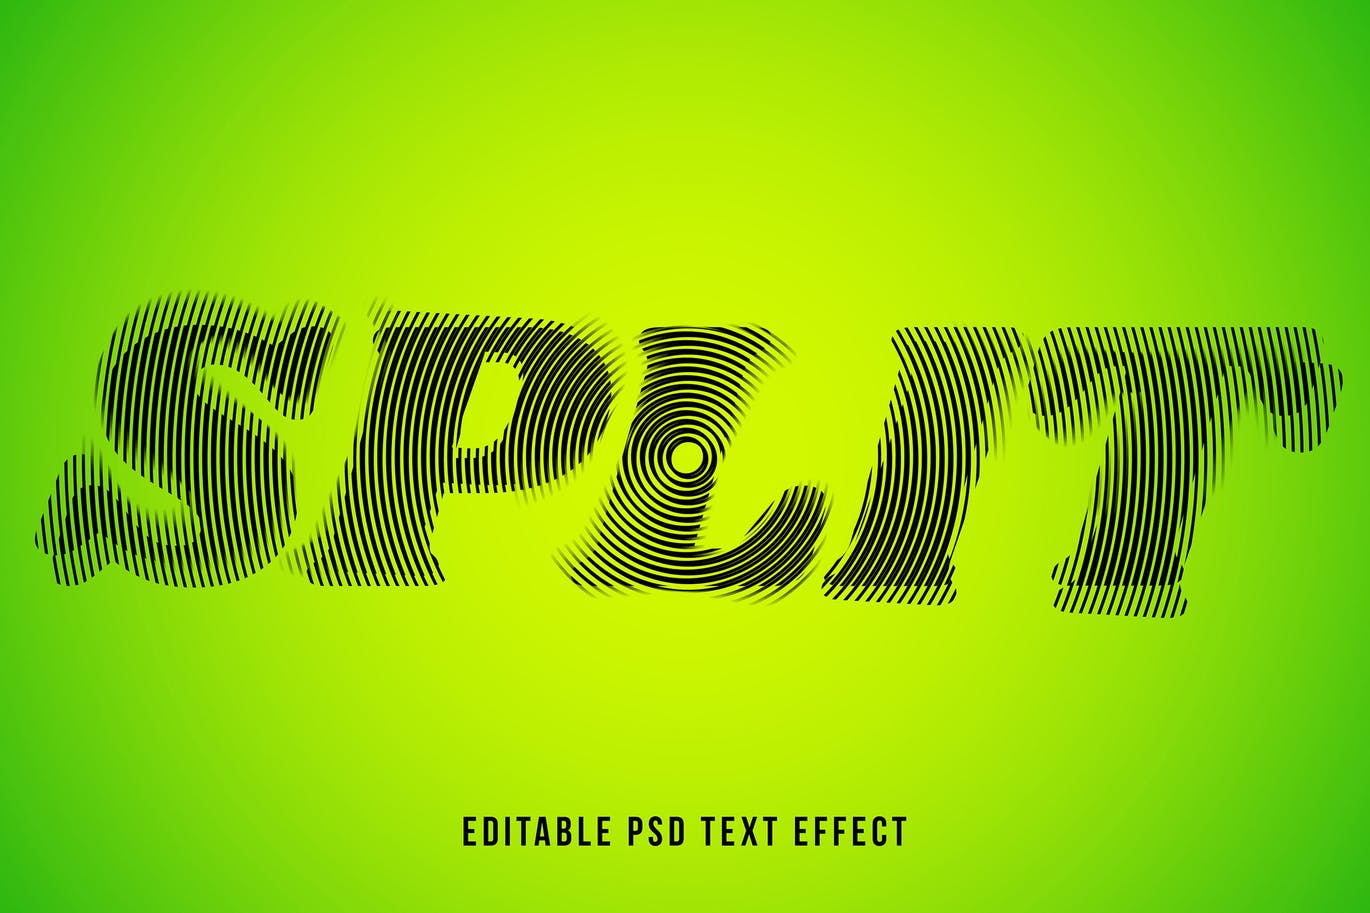 高品质的时尚高端抽象立体文字分割效果字体设计图层样式-PSD插图